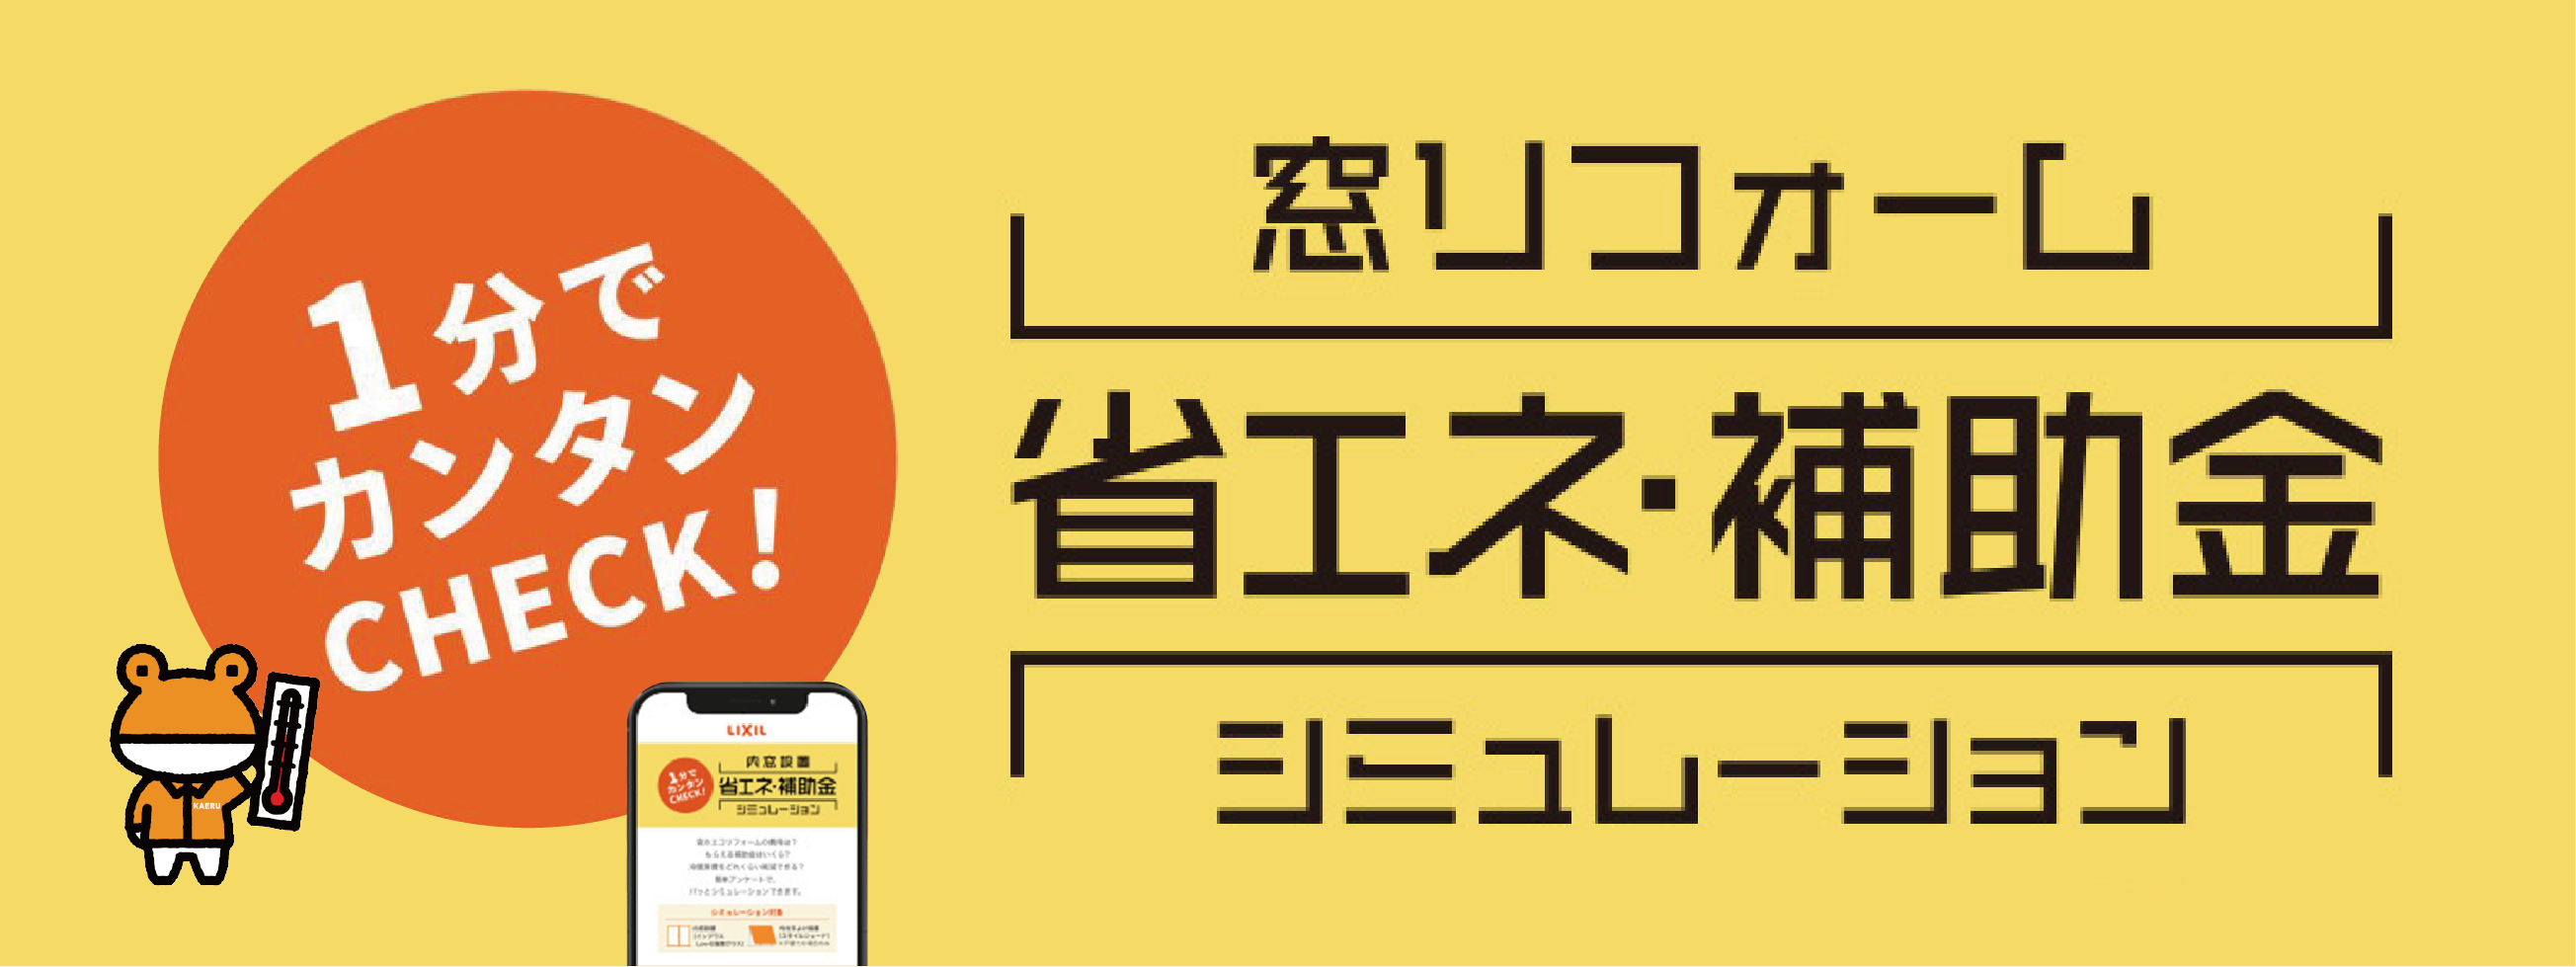 【あと1年で再配達できなくなる!?】物流の2024年問題と対策 南横浜トーヨー住器のイベントキャンペーン 写真4